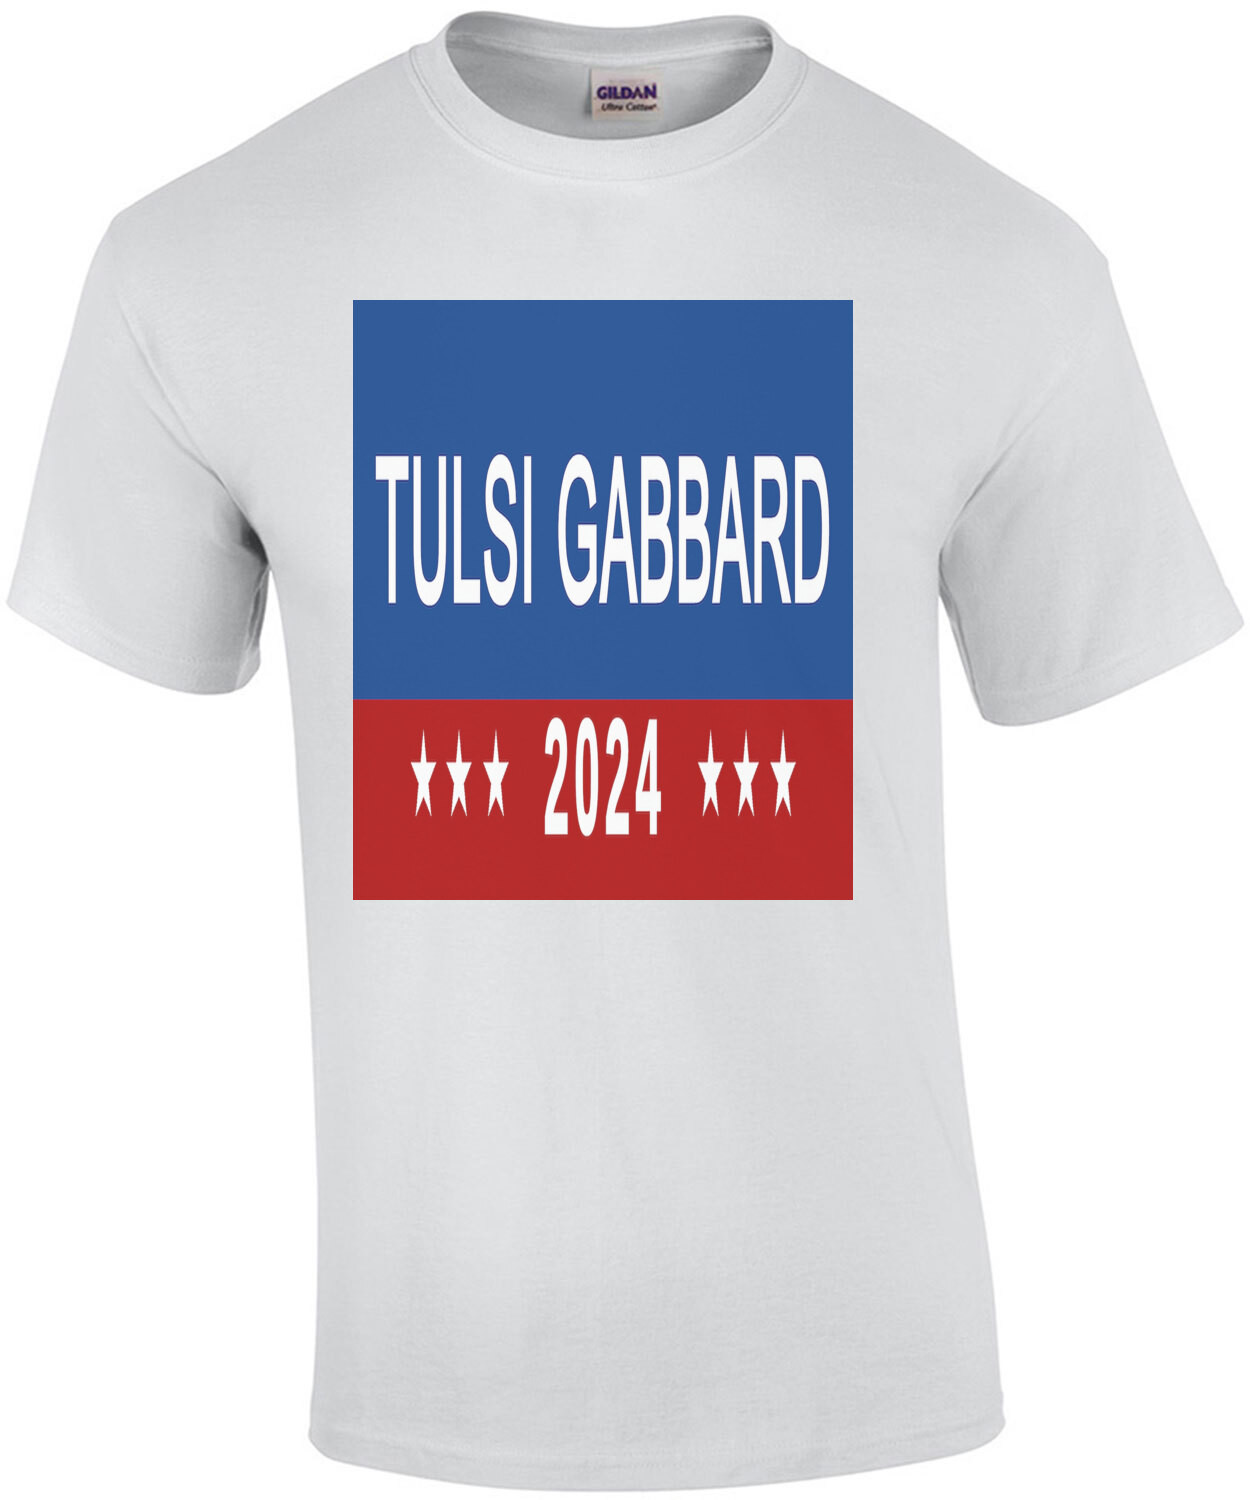 Tulsi Gabbard - Election 2024 T-Shirt